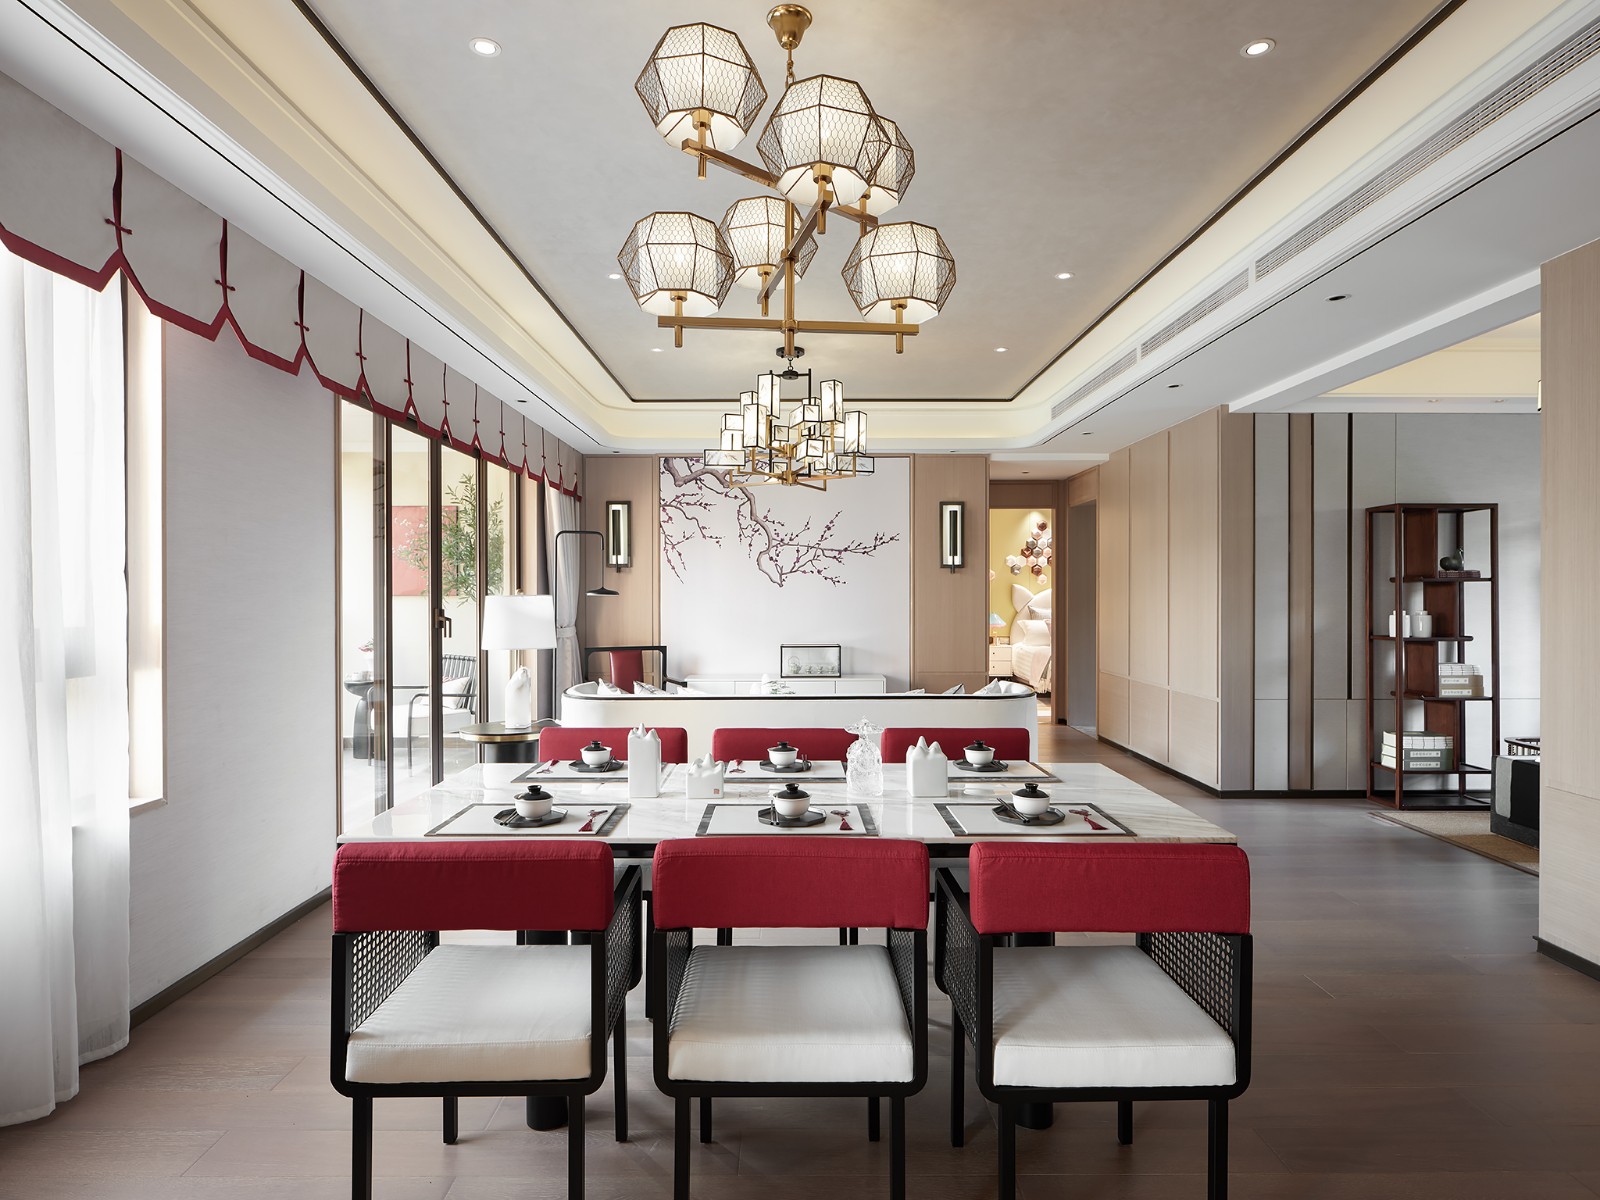 新中式风格别墅餐厅装修效果图